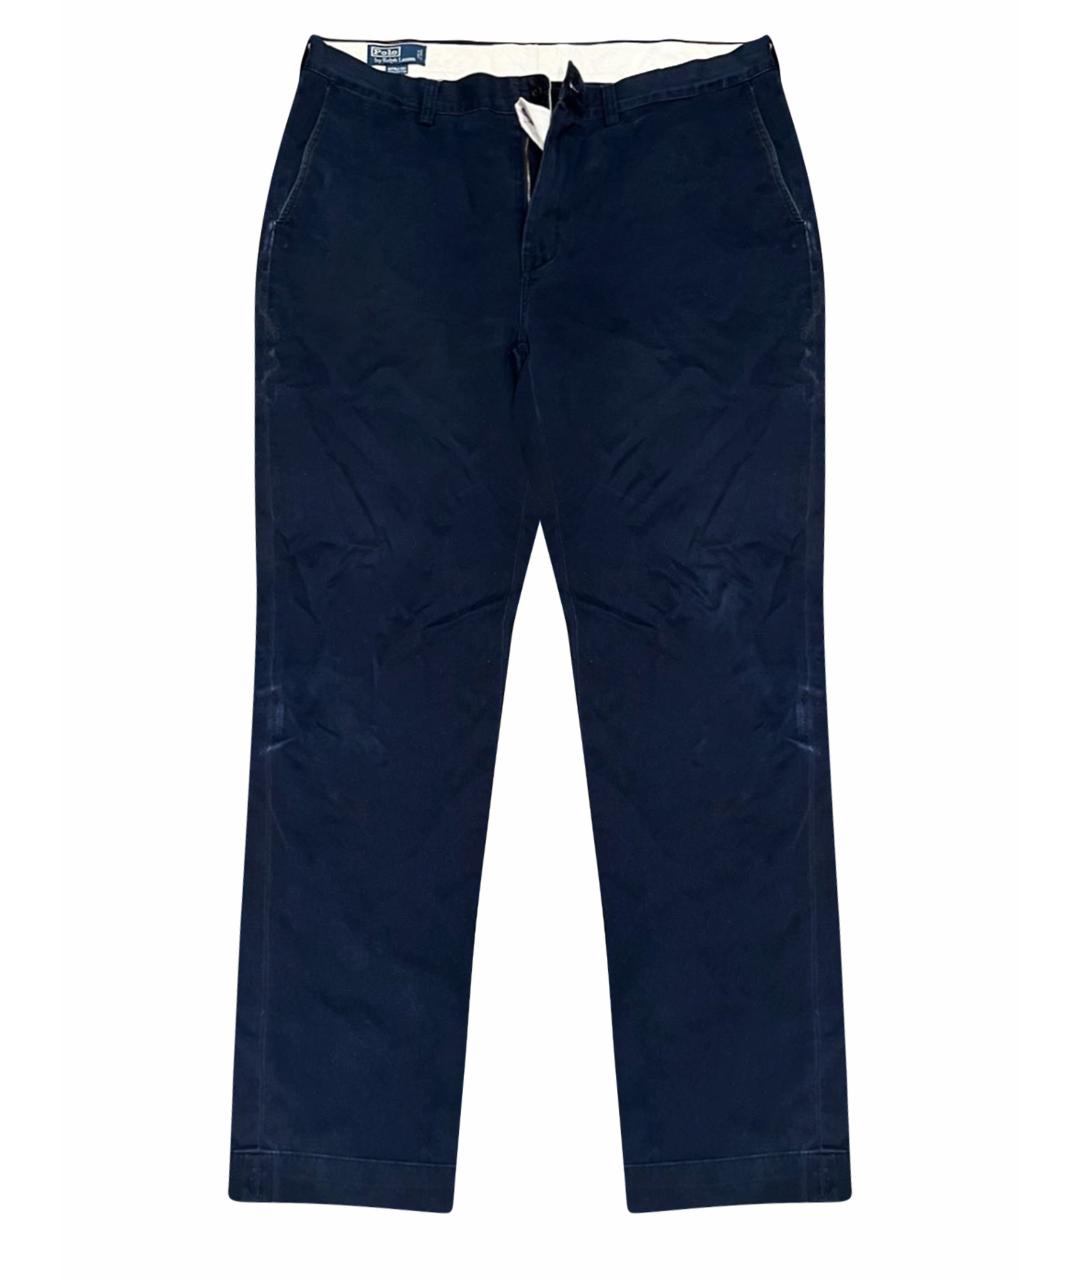 POLO RALPH LAUREN Синие хлопковые прямые джинсы, фото 1